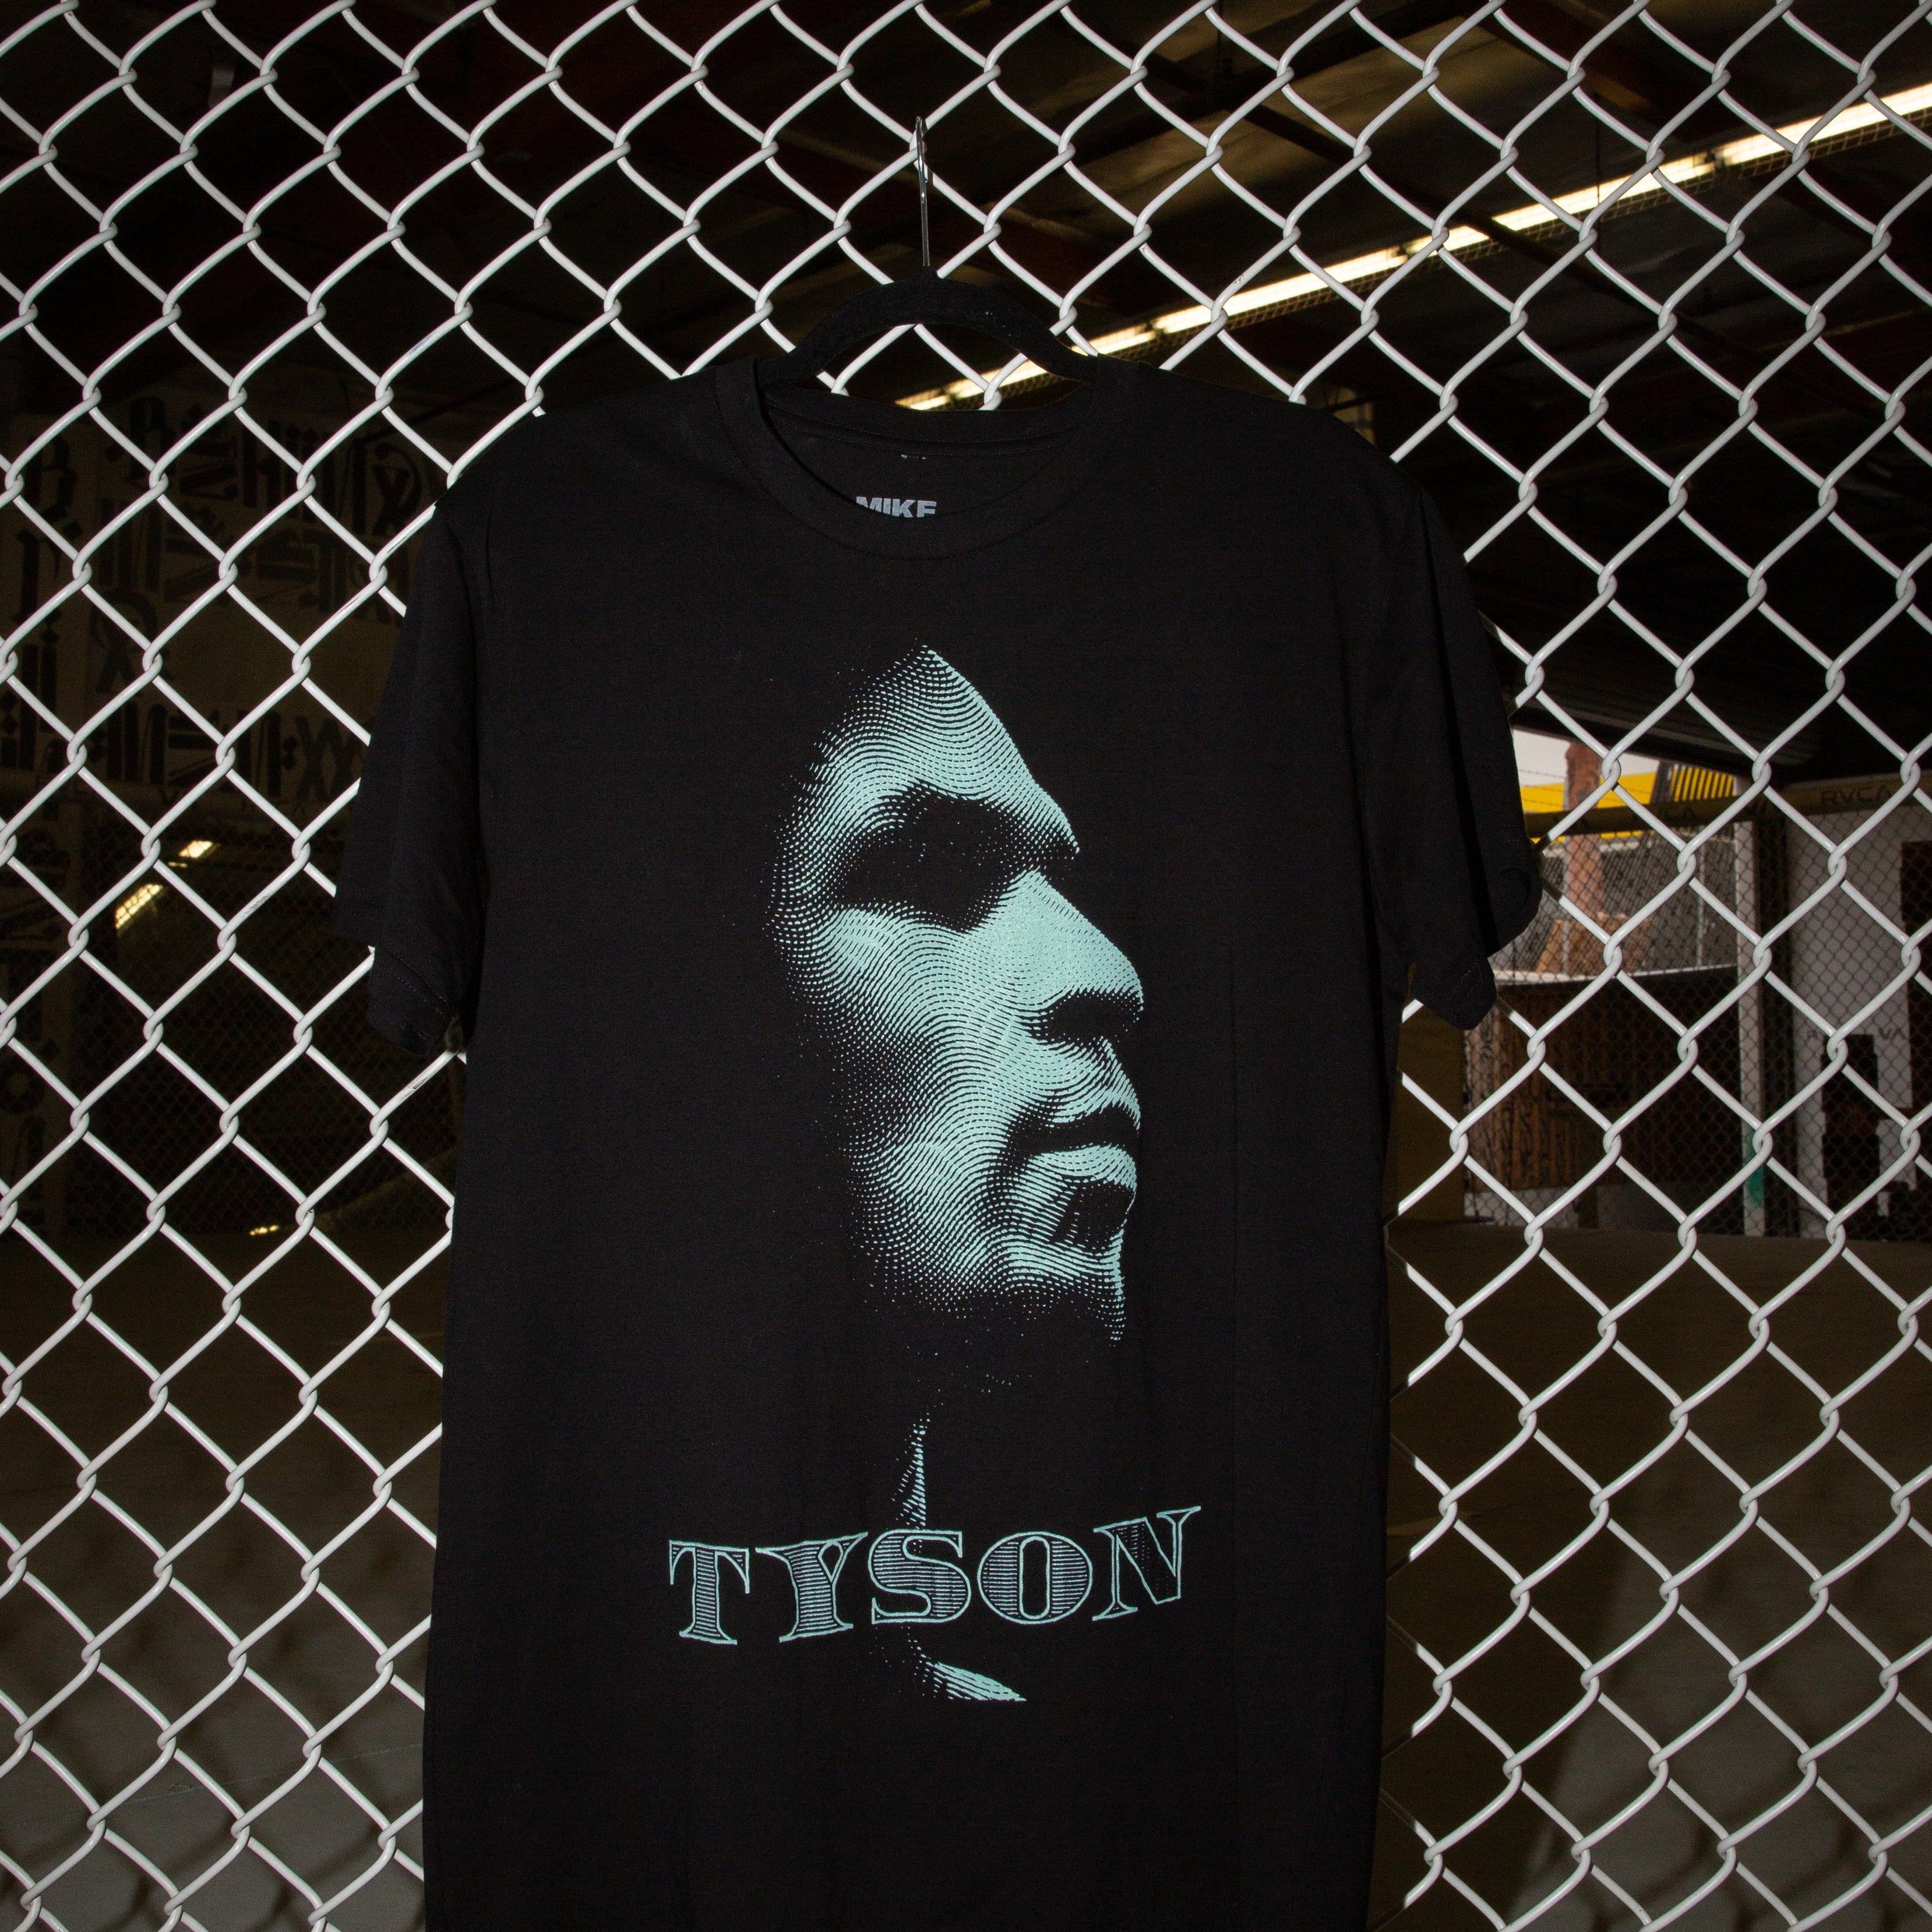 Tyson Money - MIKE TYSON